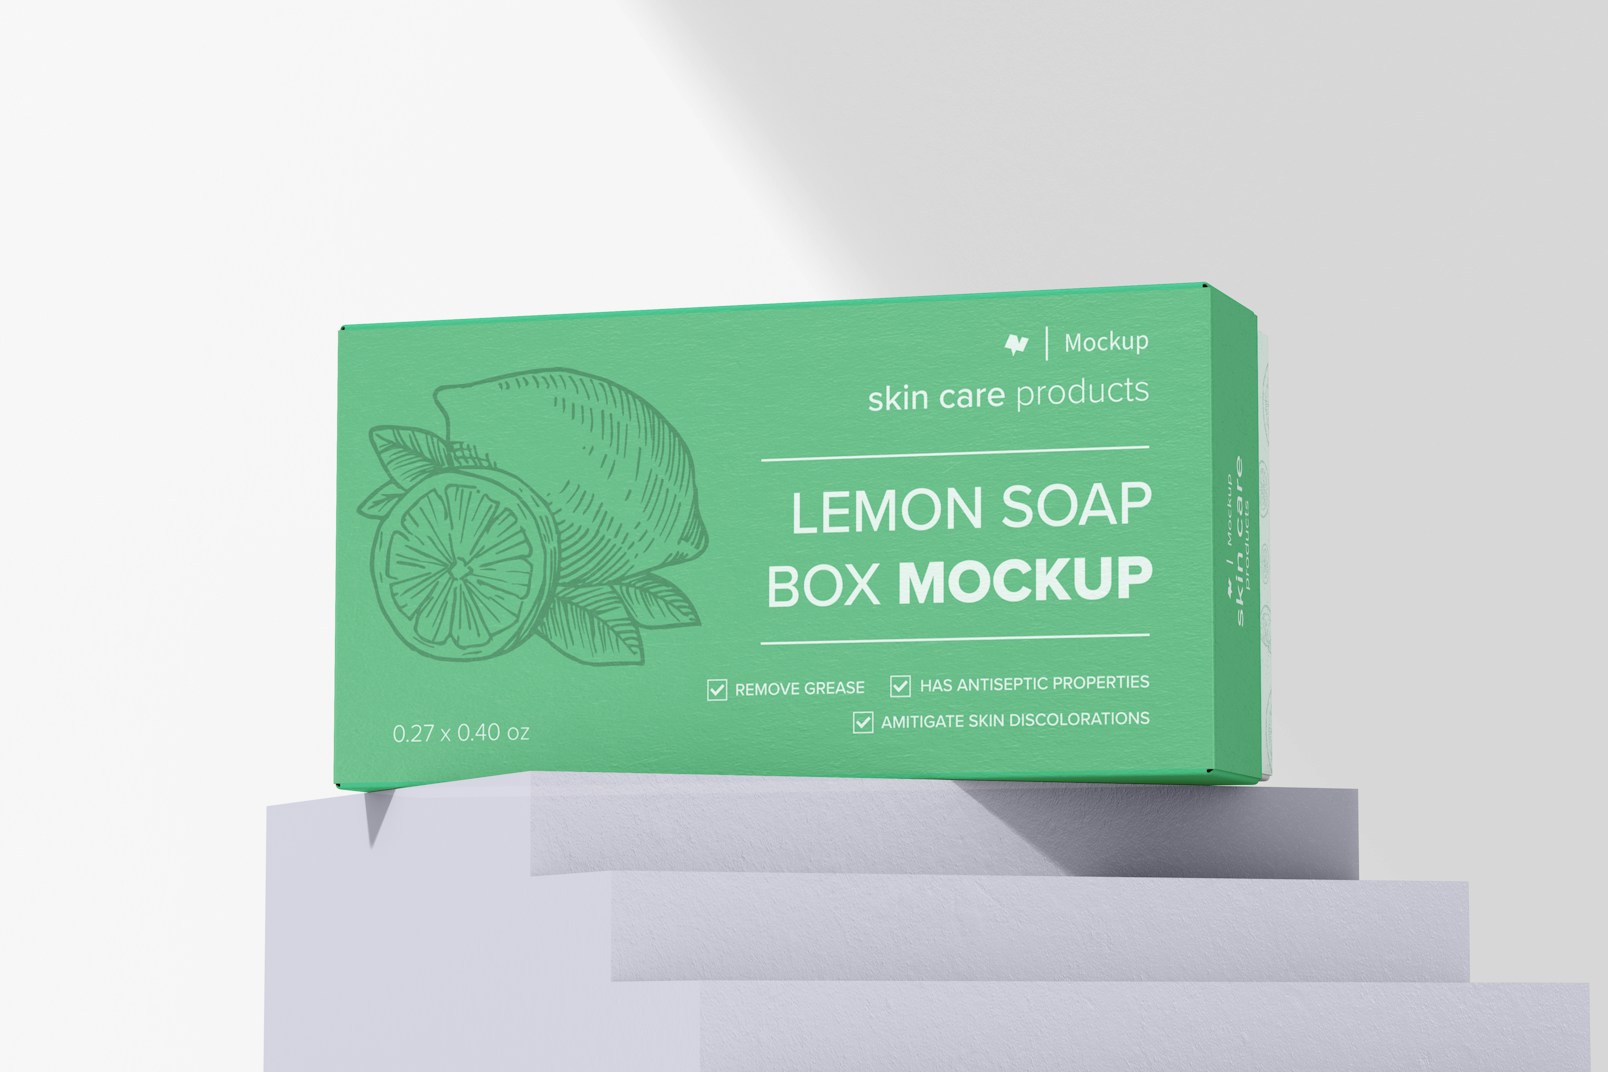 Lemon Soap Box Mockup, on Podium